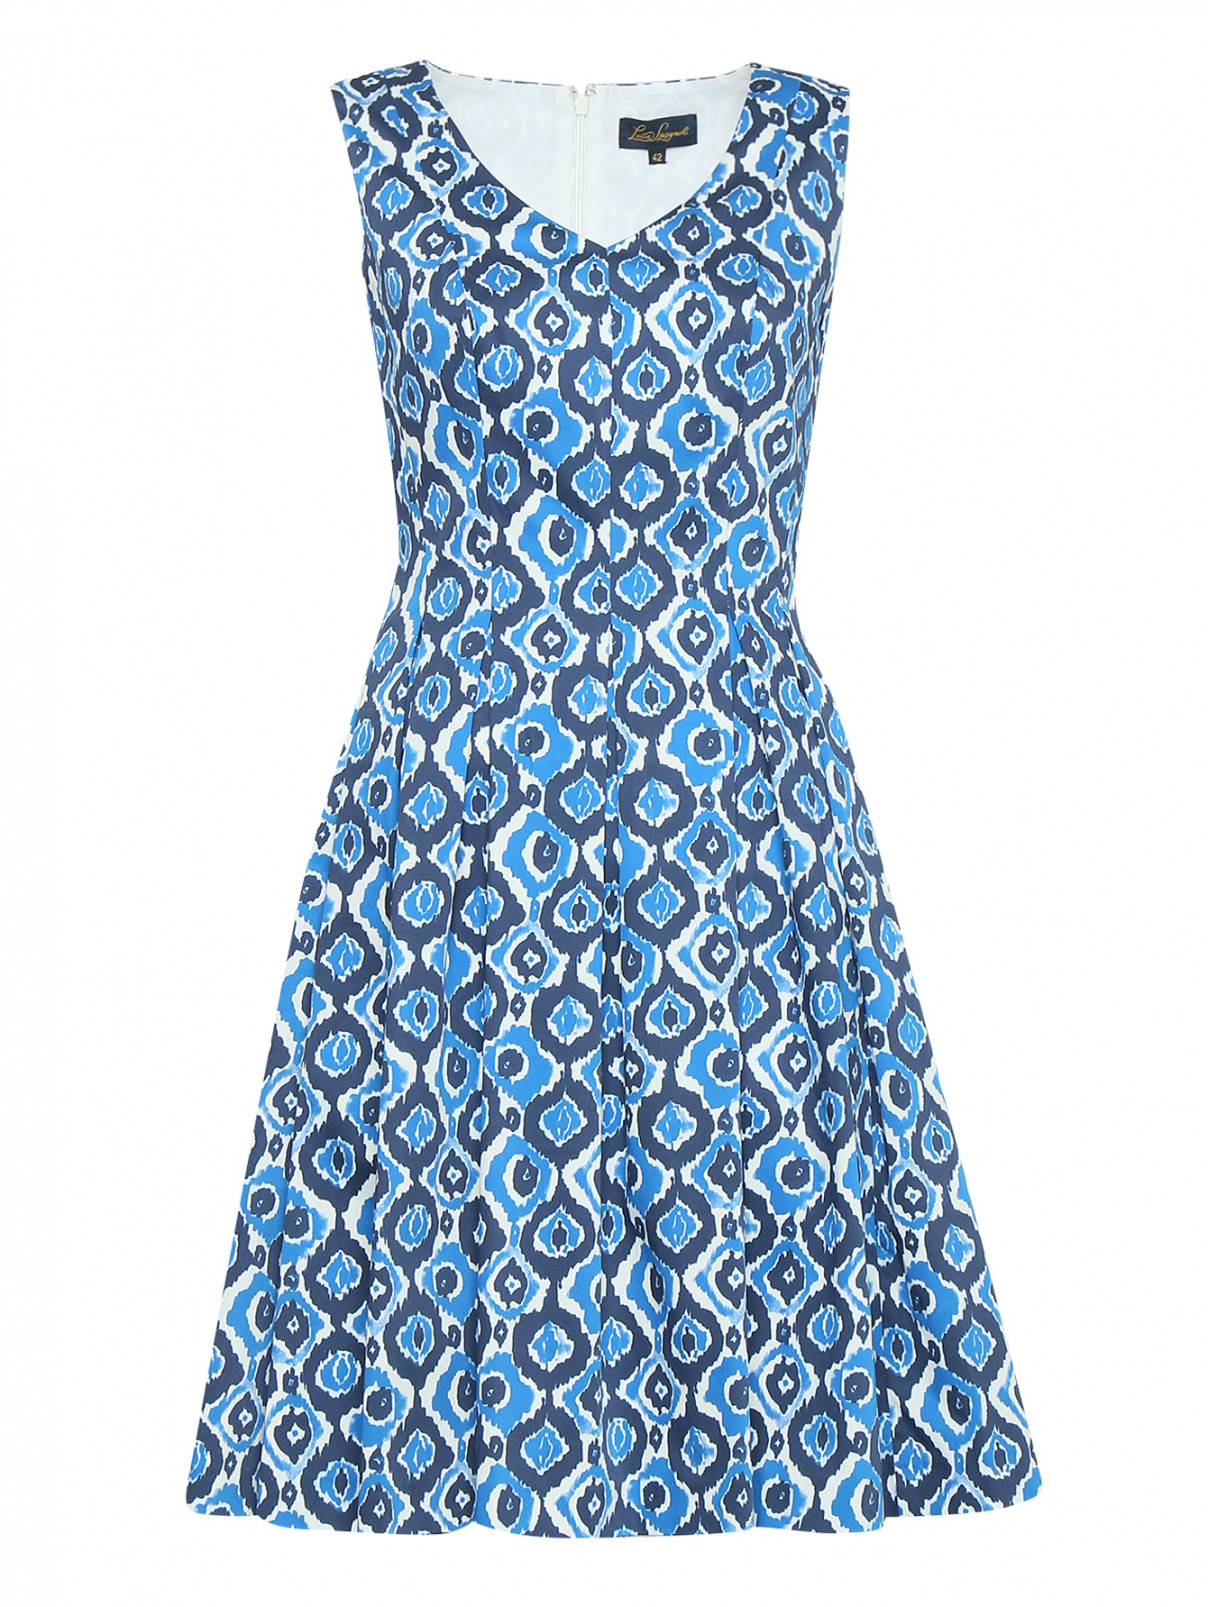 Платье из хлопка с узором Luisa Spagnoli  –  Общий вид  – Цвет:  Синий